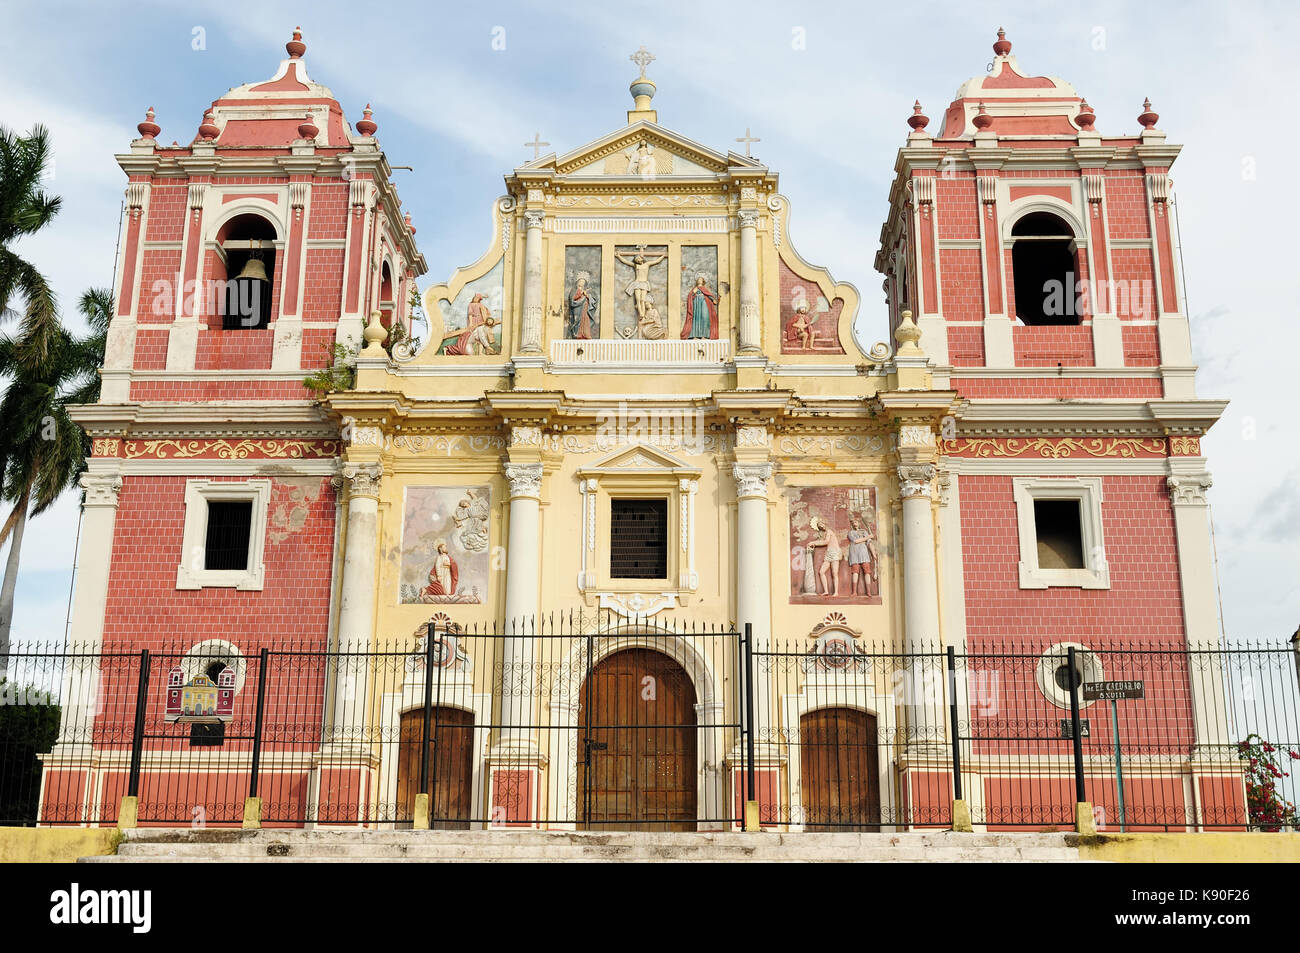 Mittelamerika, Leon-der kolonialen spanischen Stadt in Nicaragua hat die größte Kathedrale in Mittelamerika und farbenfrohe Architektur. Stockfoto